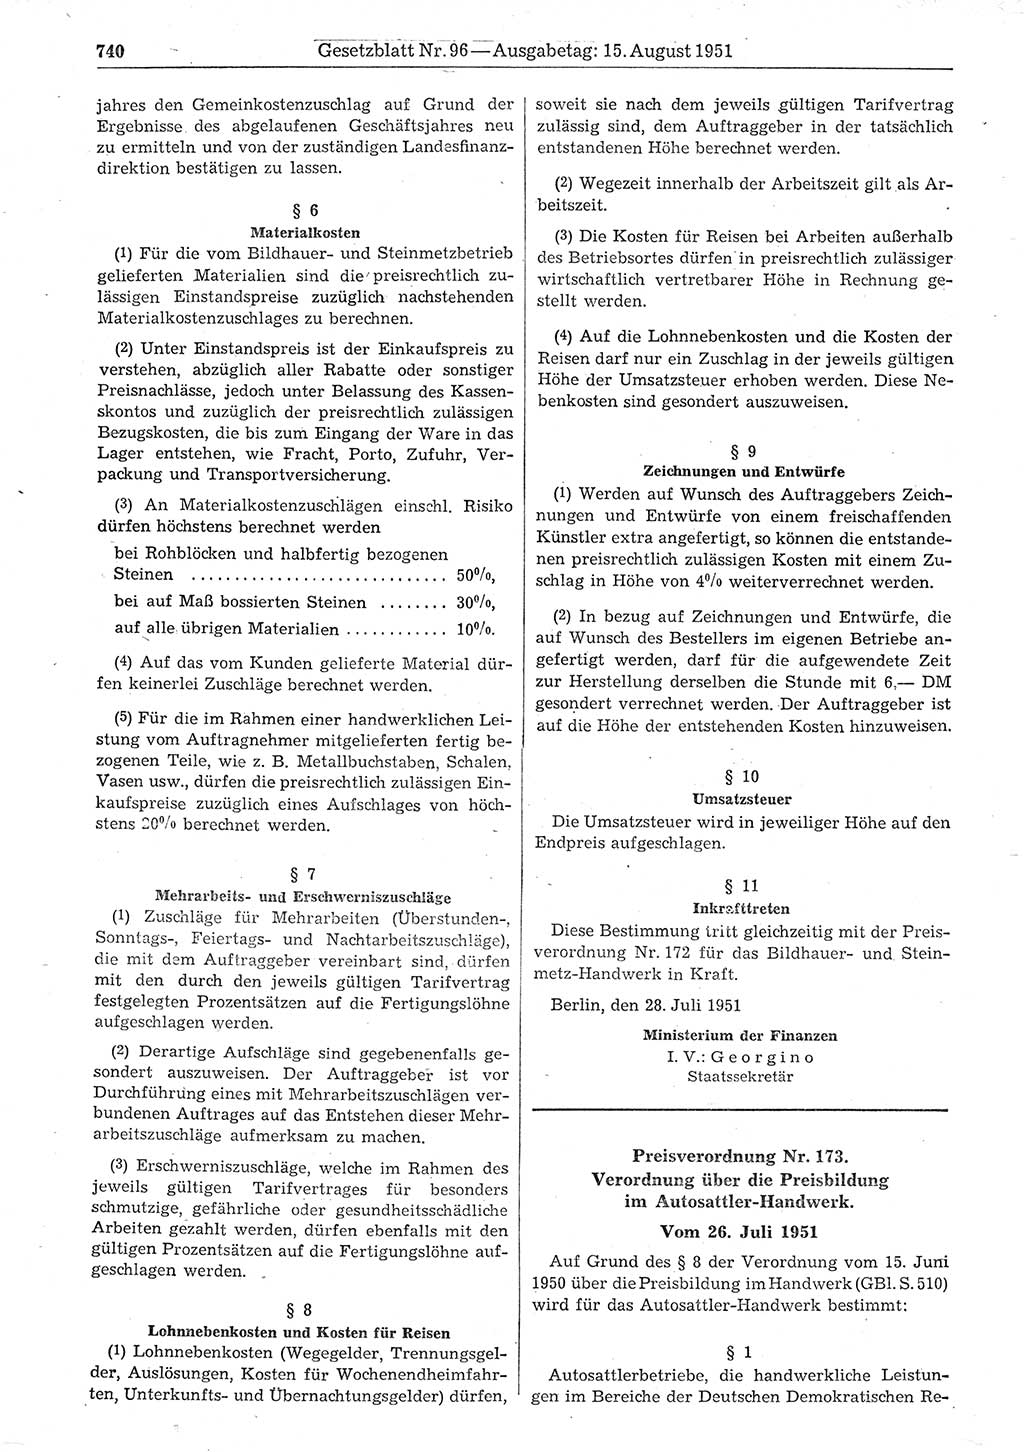 Gesetzblatt (GBl.) der Deutschen Demokratischen Republik (DDR) 1951, Seite 740 (GBl. DDR 1951, S. 740)